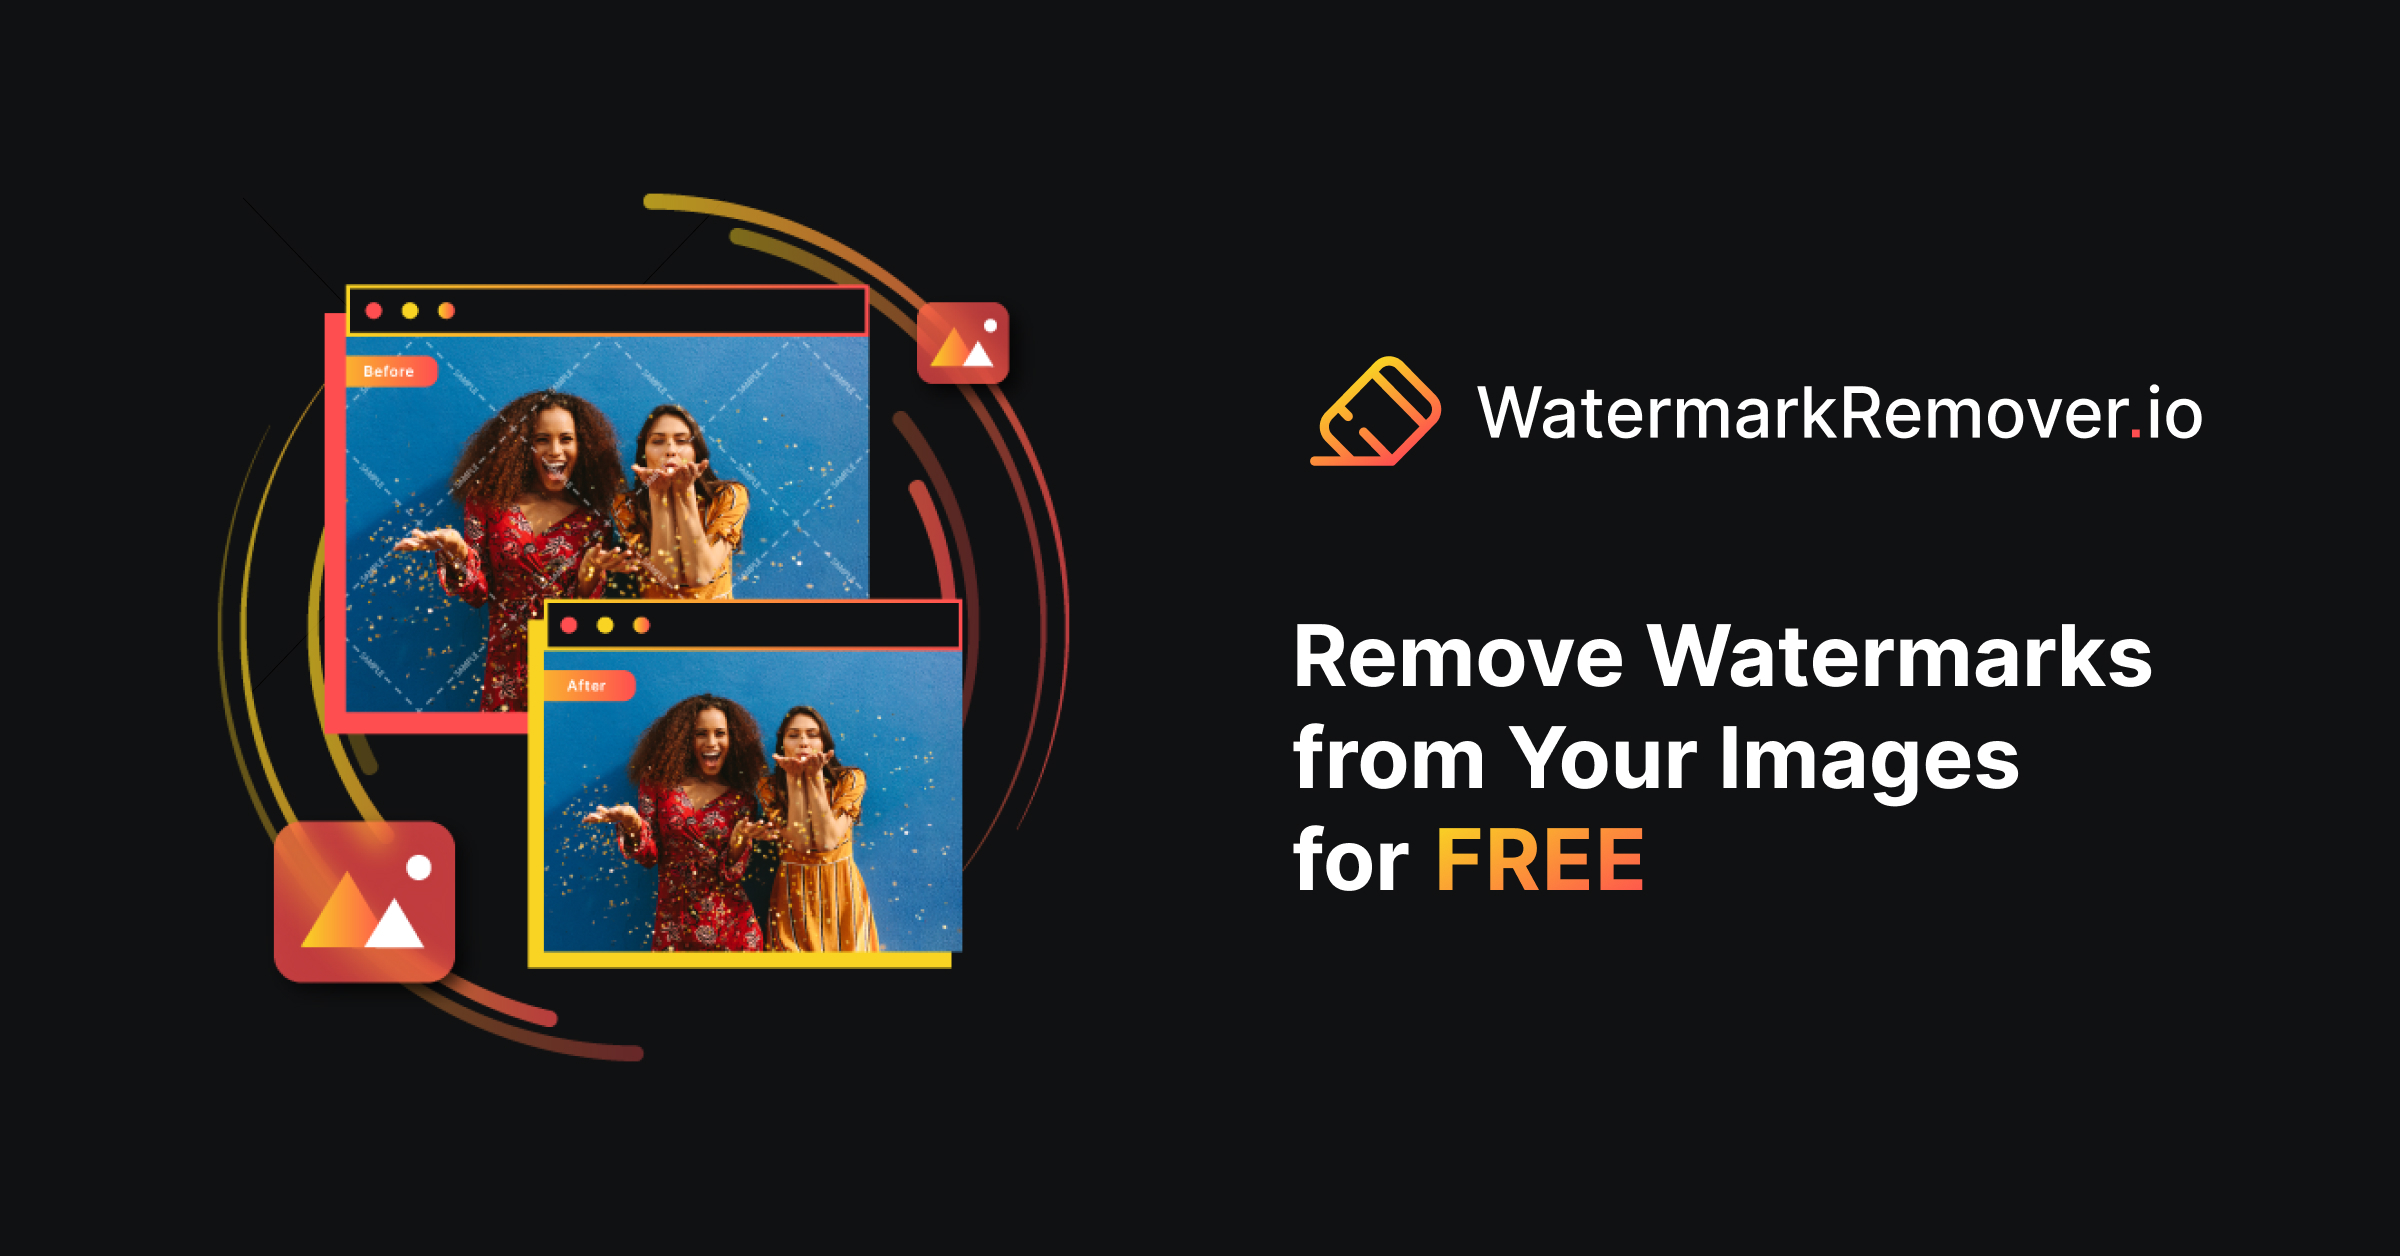 Удаление водяного знака - используйте ИИ, чтобы удалить водяные знаки с изображения